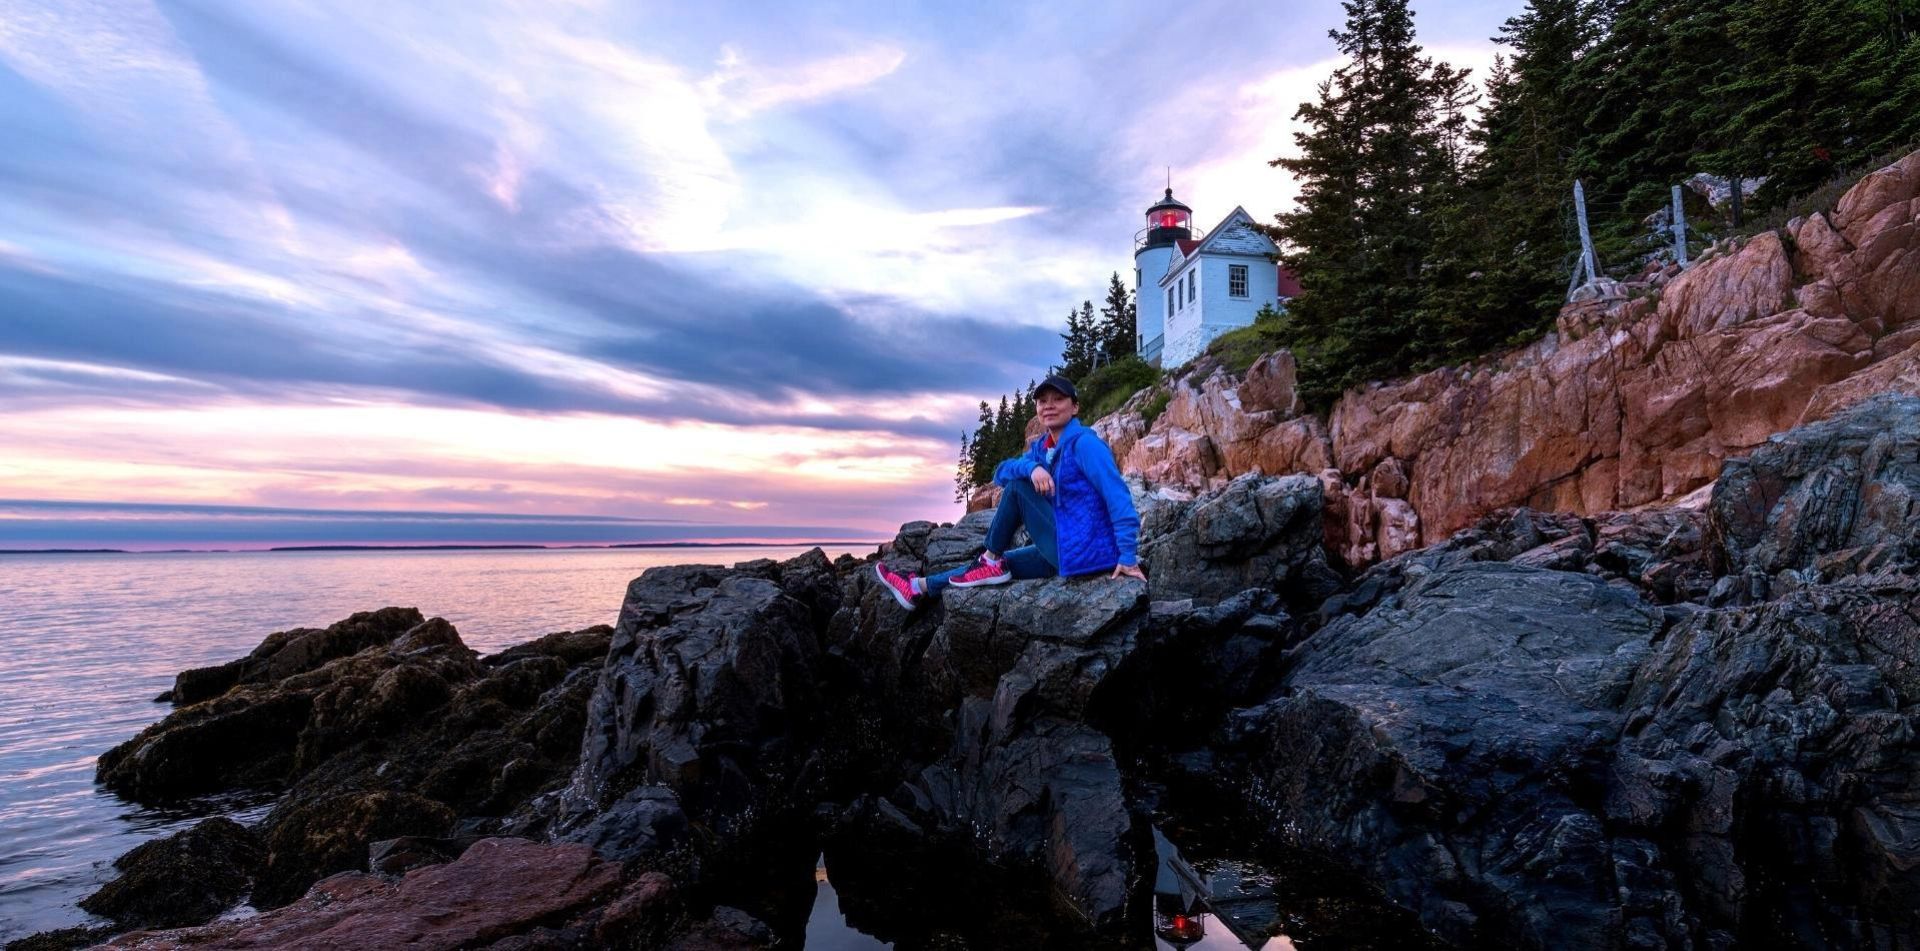 The Bass Harbor Head Lighthouse in Acadia National Park, Maine